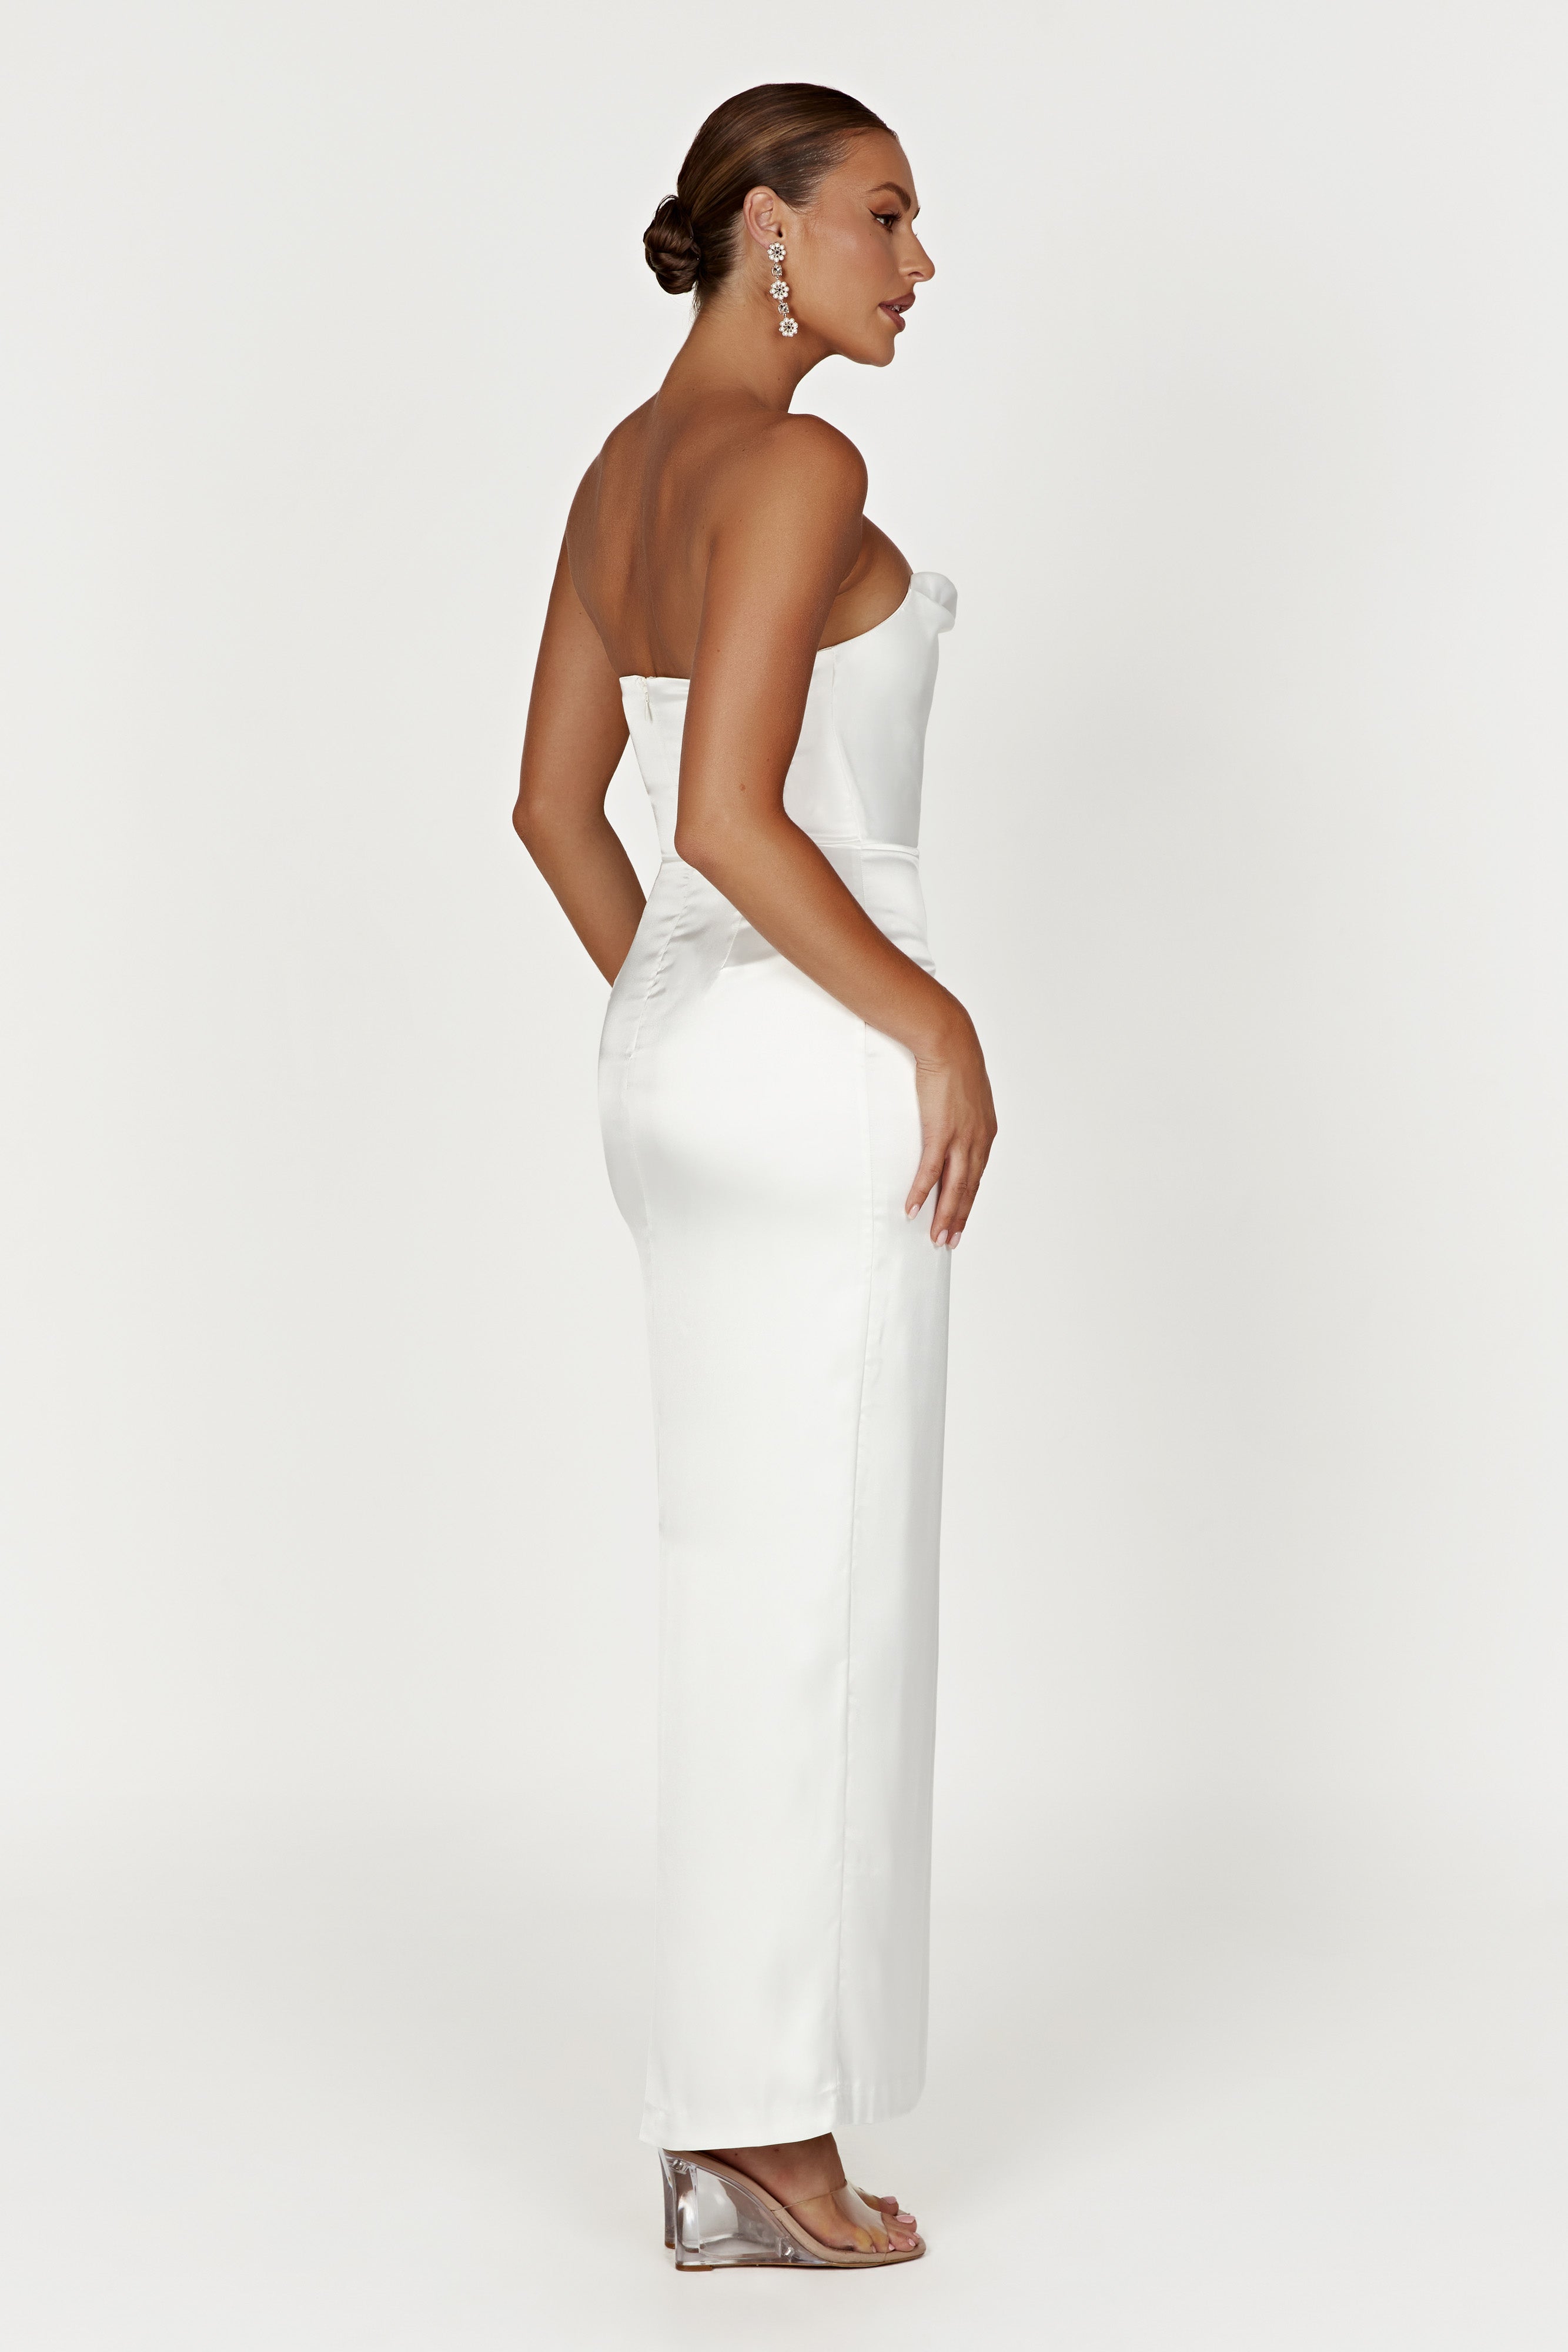 Alanis Strapless Maxi Dress – White